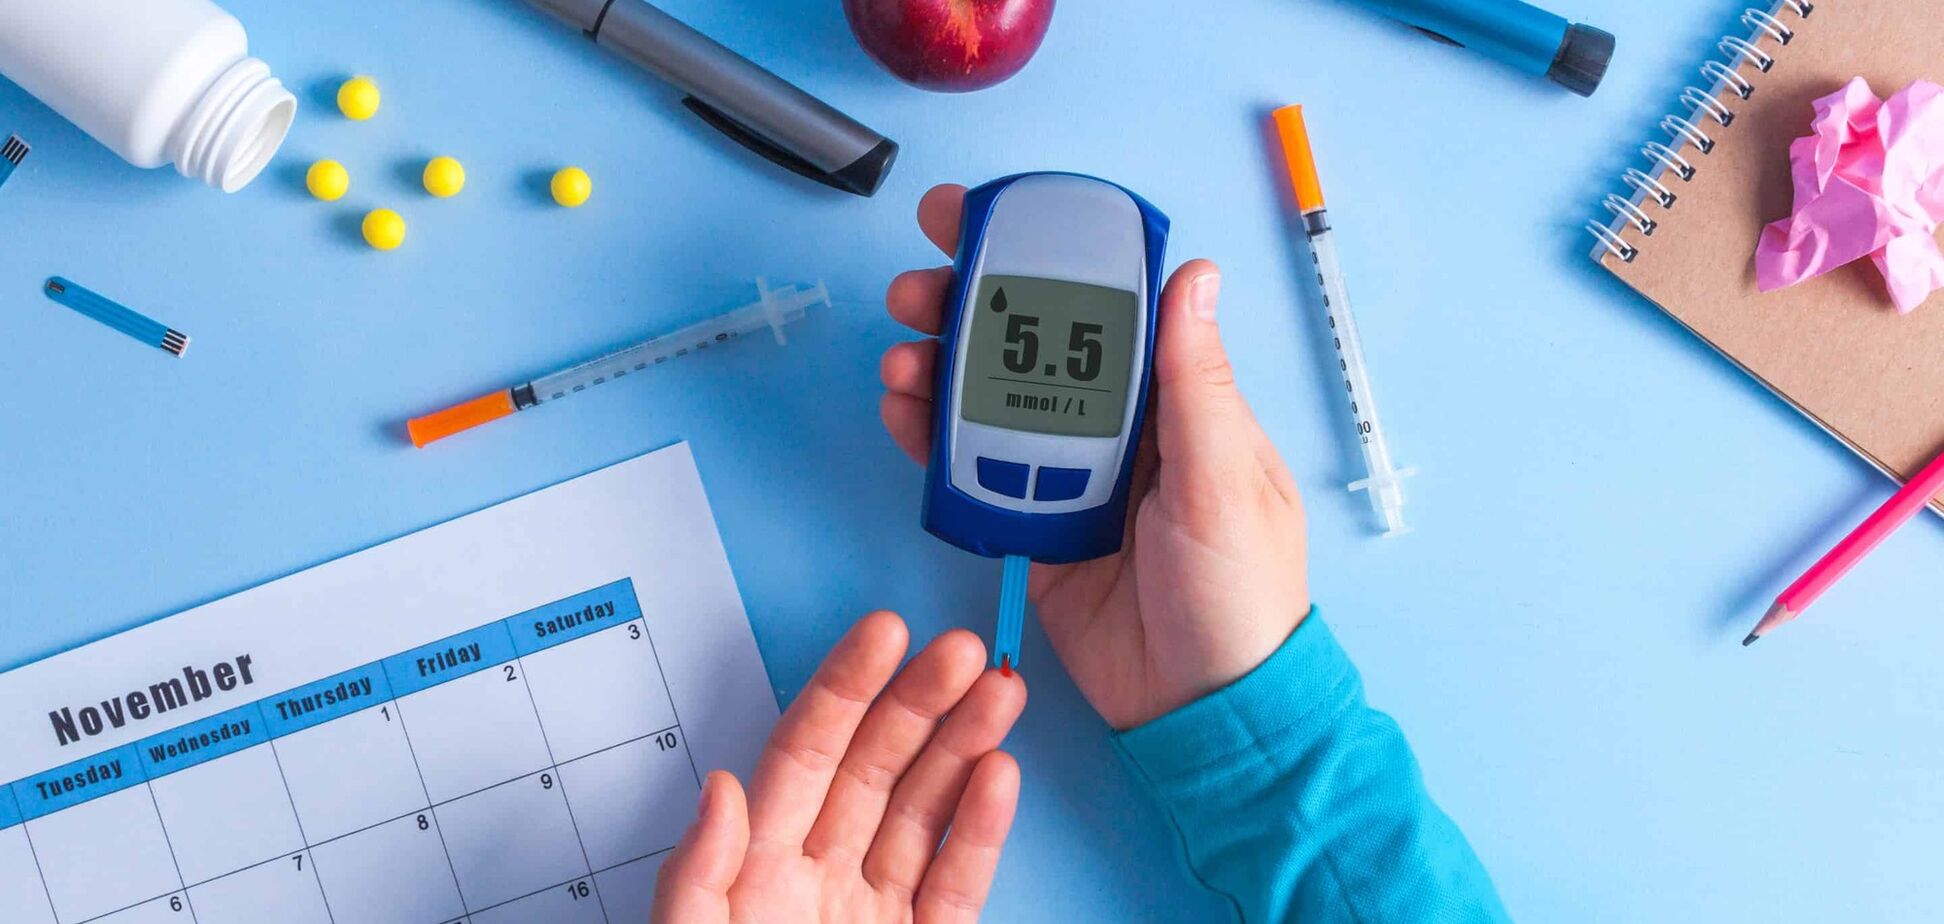 Цукровий діабет не вирок: які ліки допоможуть повноцінно жити